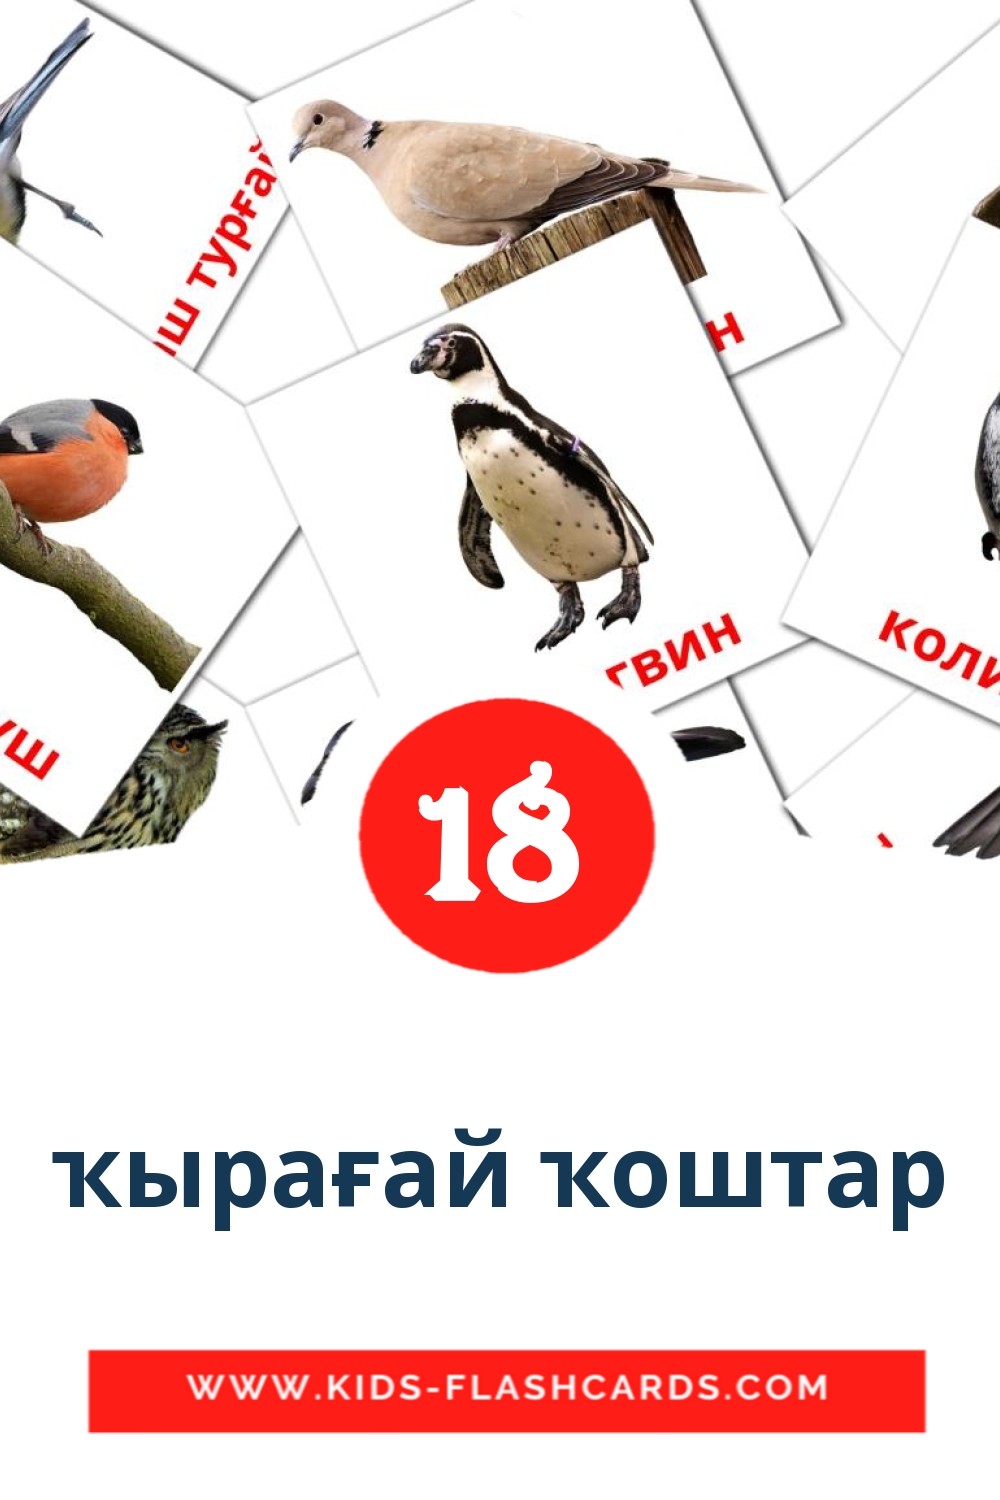 18 ҡырағай ҡоштар fotokaarten voor kleuters in het bashkir